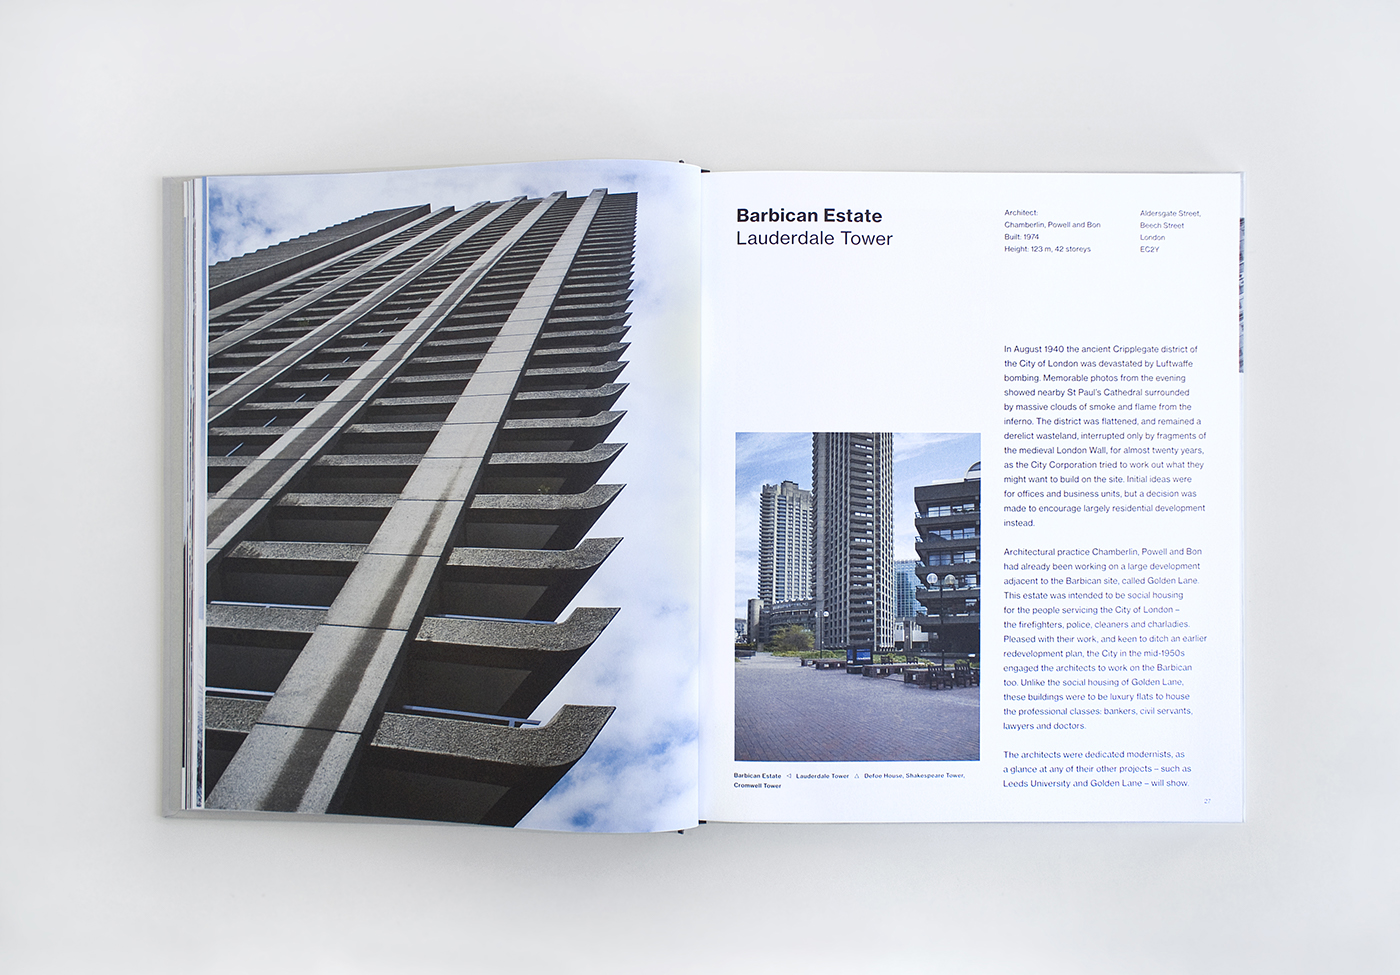 Brutalism London post-war architecture ILLUSTRATION  Social housing paper model modernism pop-up city